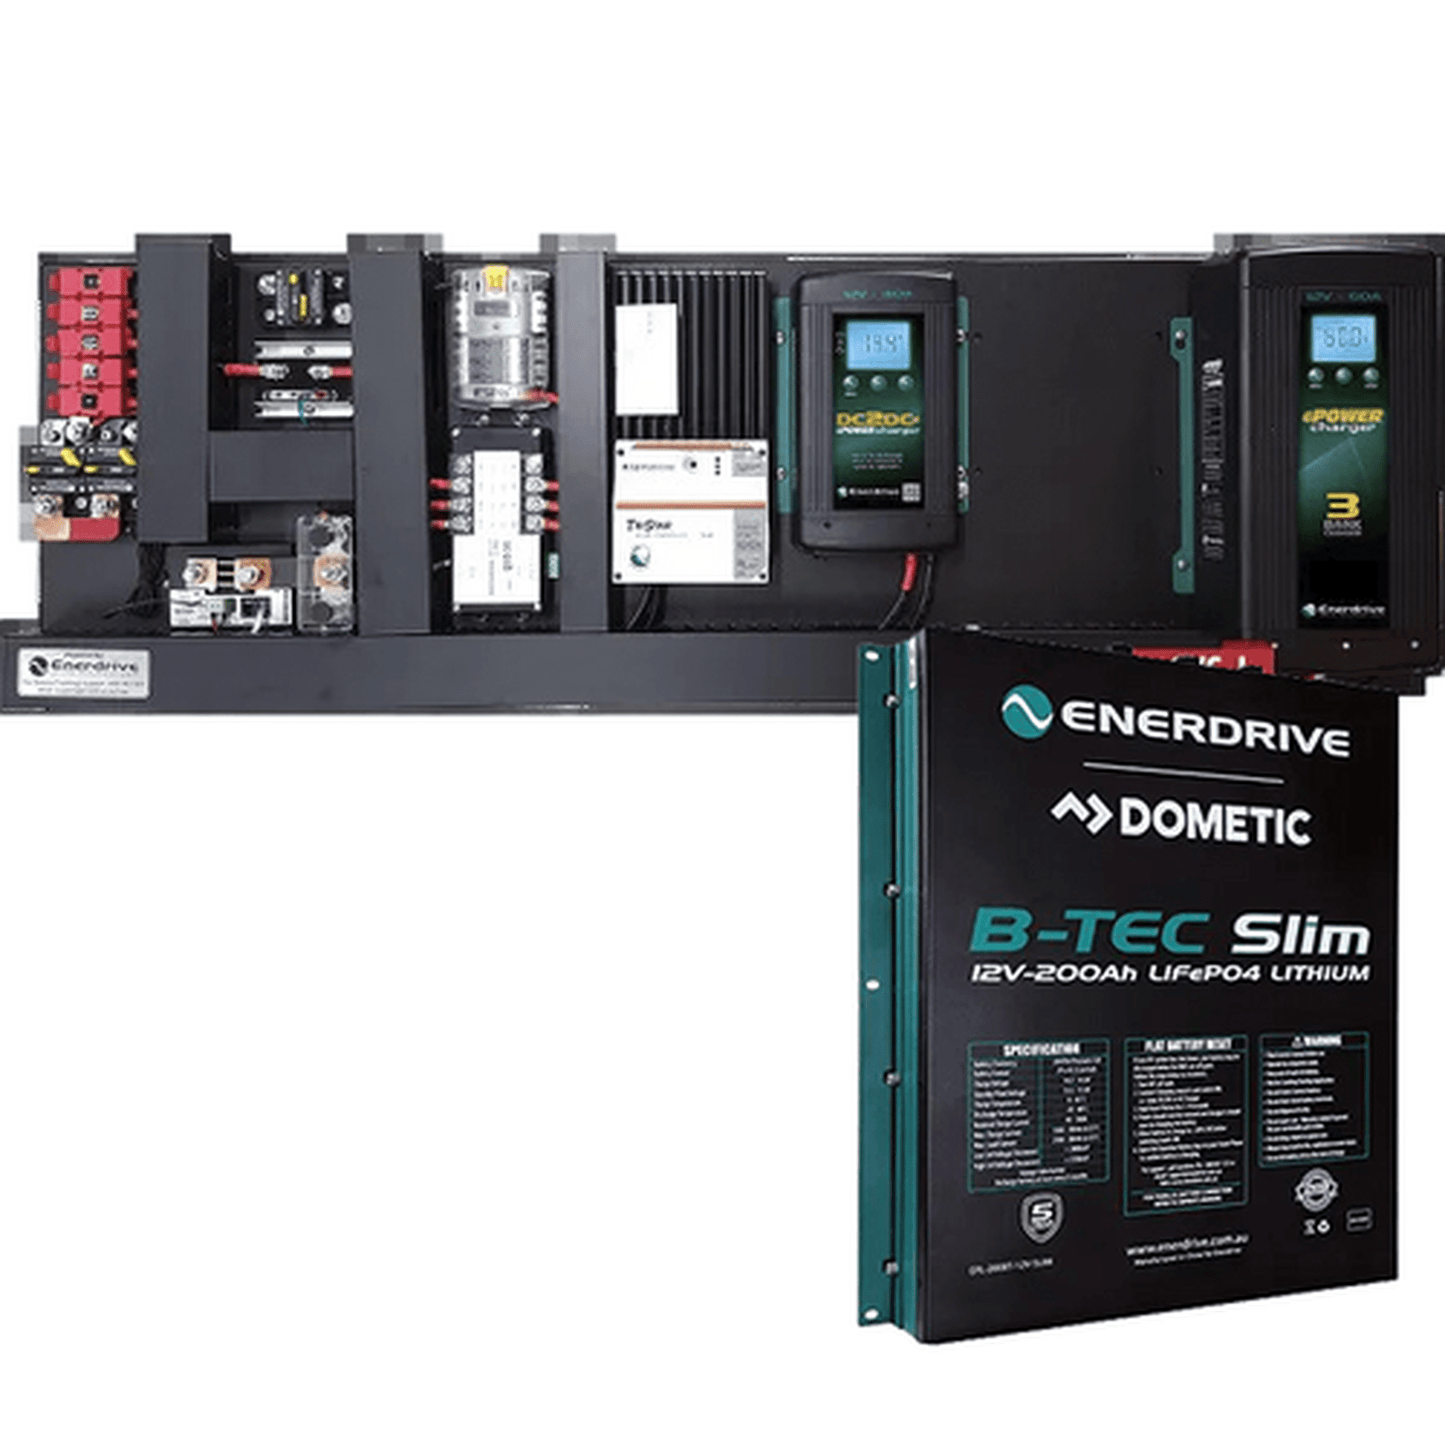 Enerdrive eSYSTEM-I 60A AC / 40A DC with TriStar 45A Solar Reg & Simarine Monitor